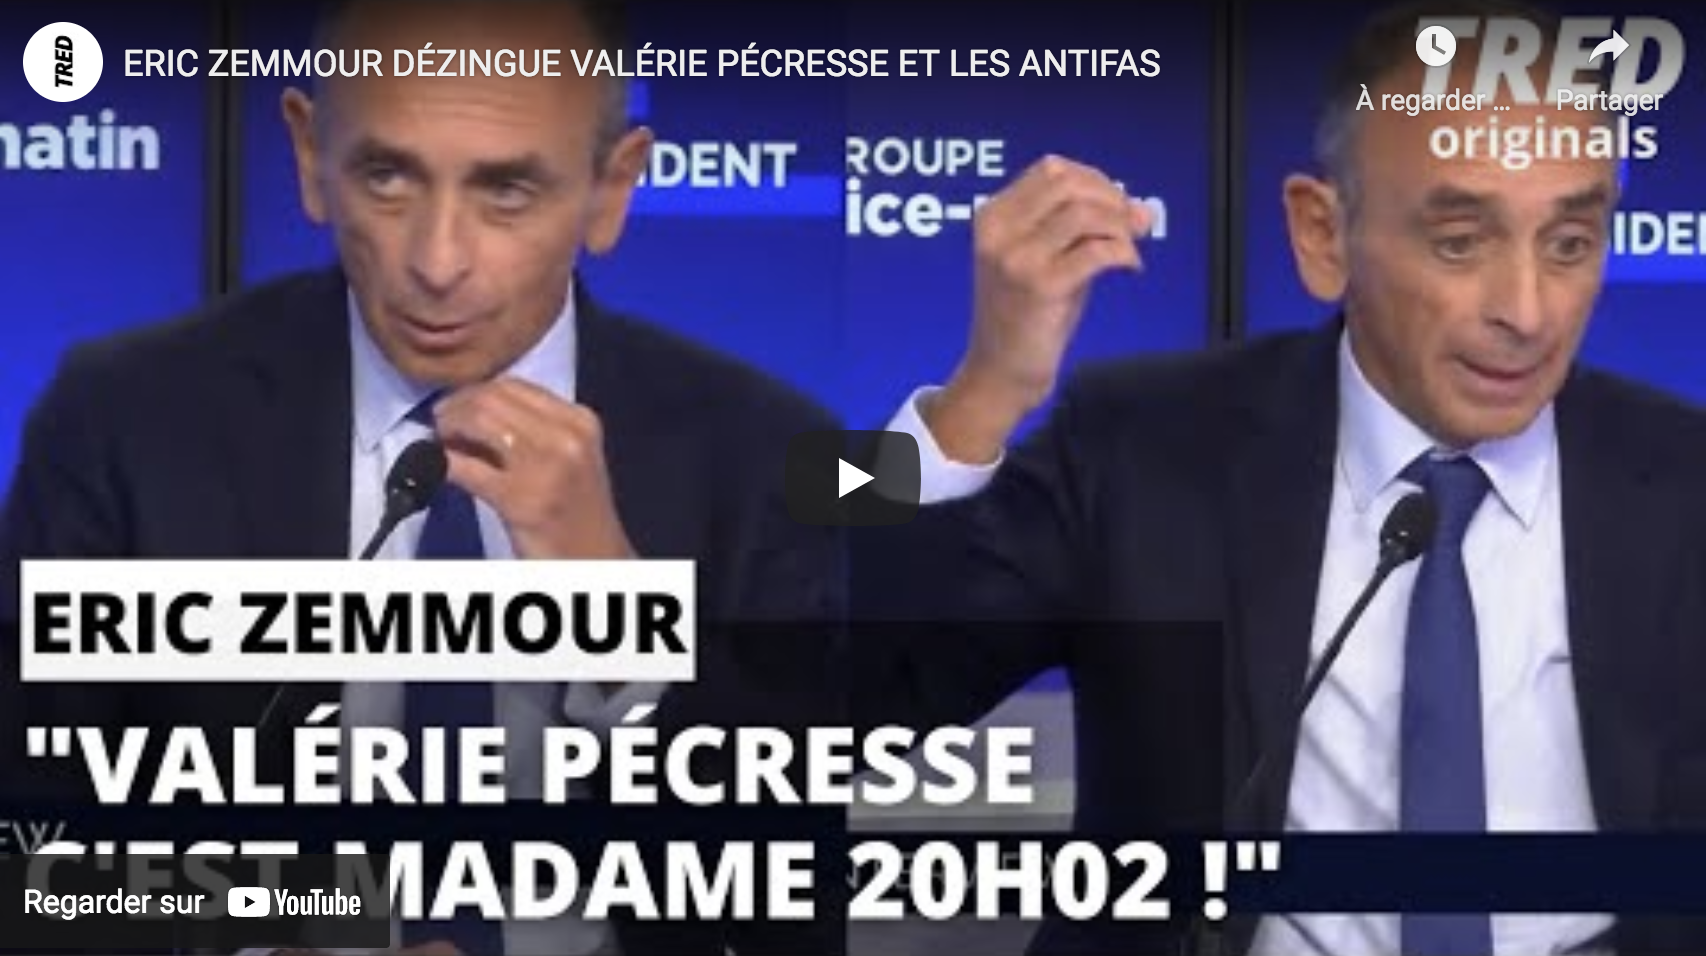 Éric Zemmour ridiculise Valérie Pécresse (“Madame 20h02”) et les antifas (VIDÉO)